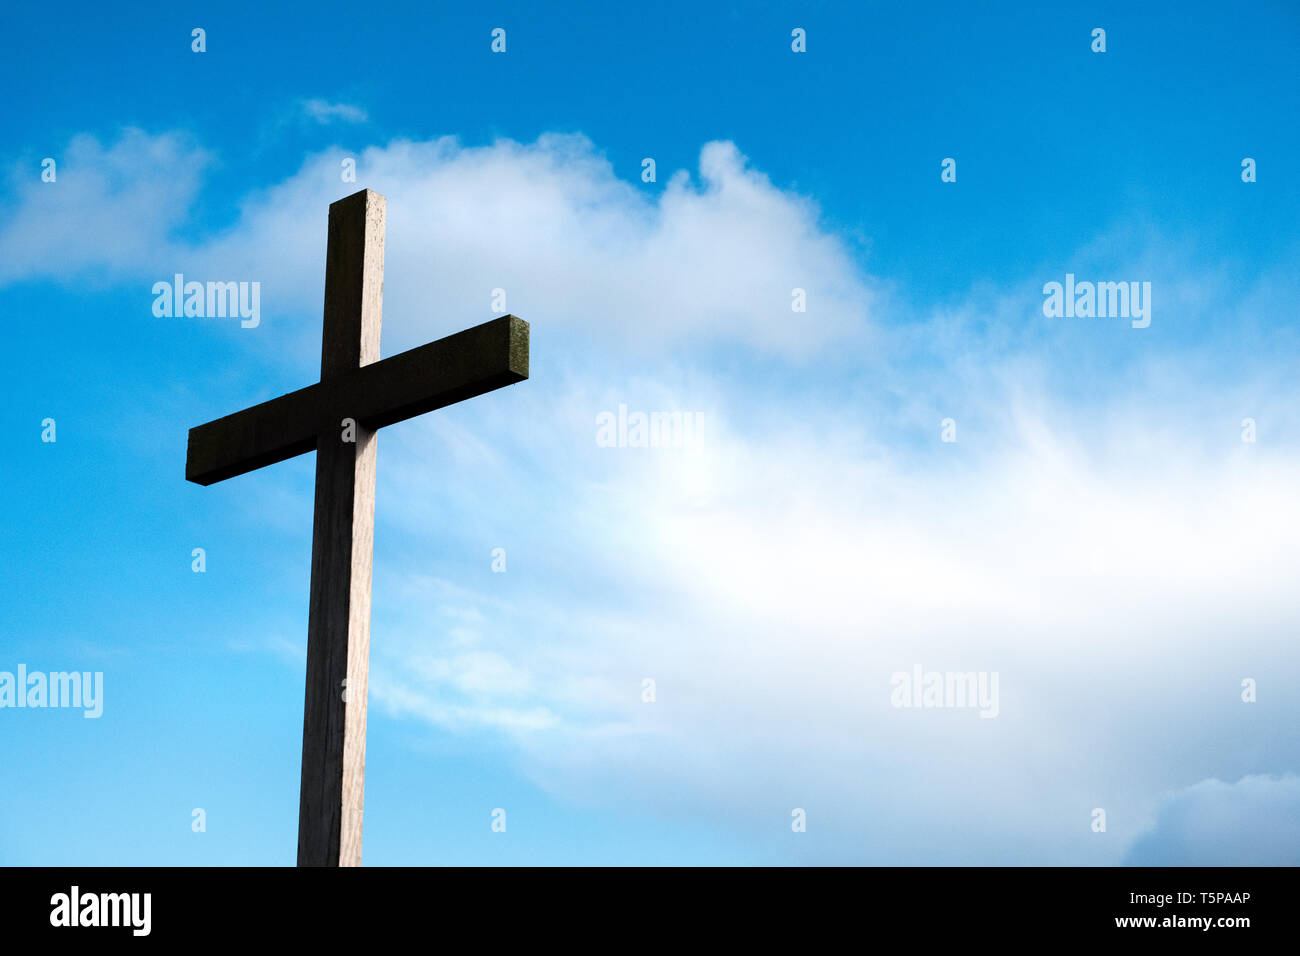 Christian cross against a blue sky Stock Photo